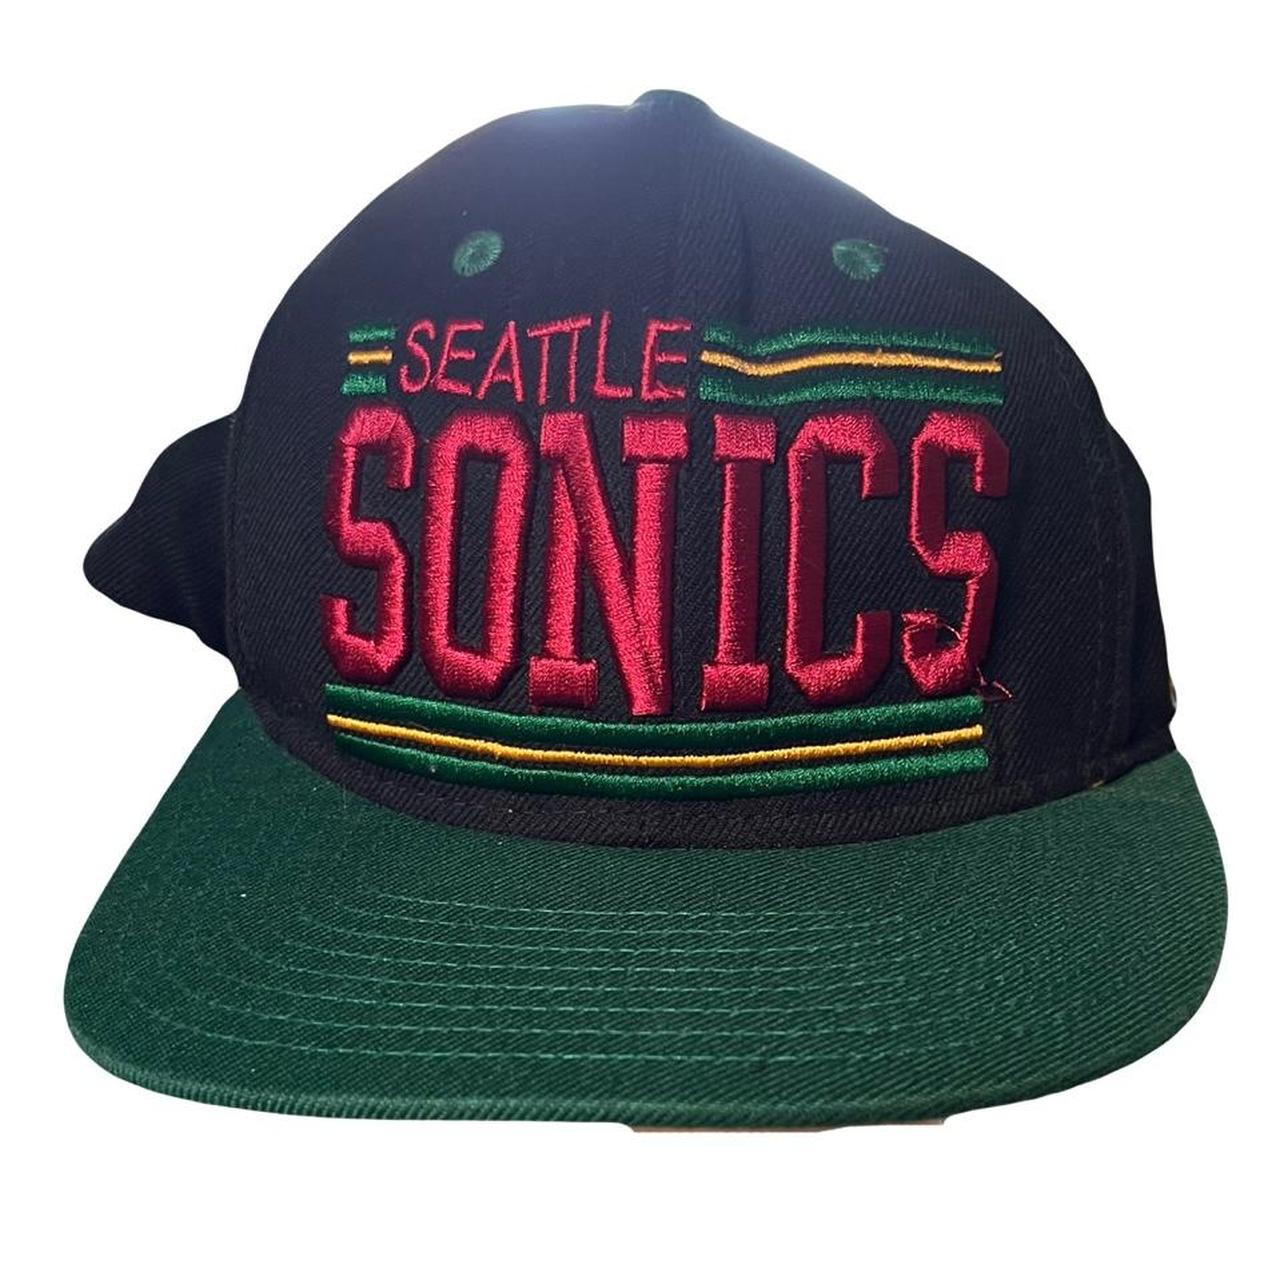 vintage seattle sonics hat! in great... - Depop